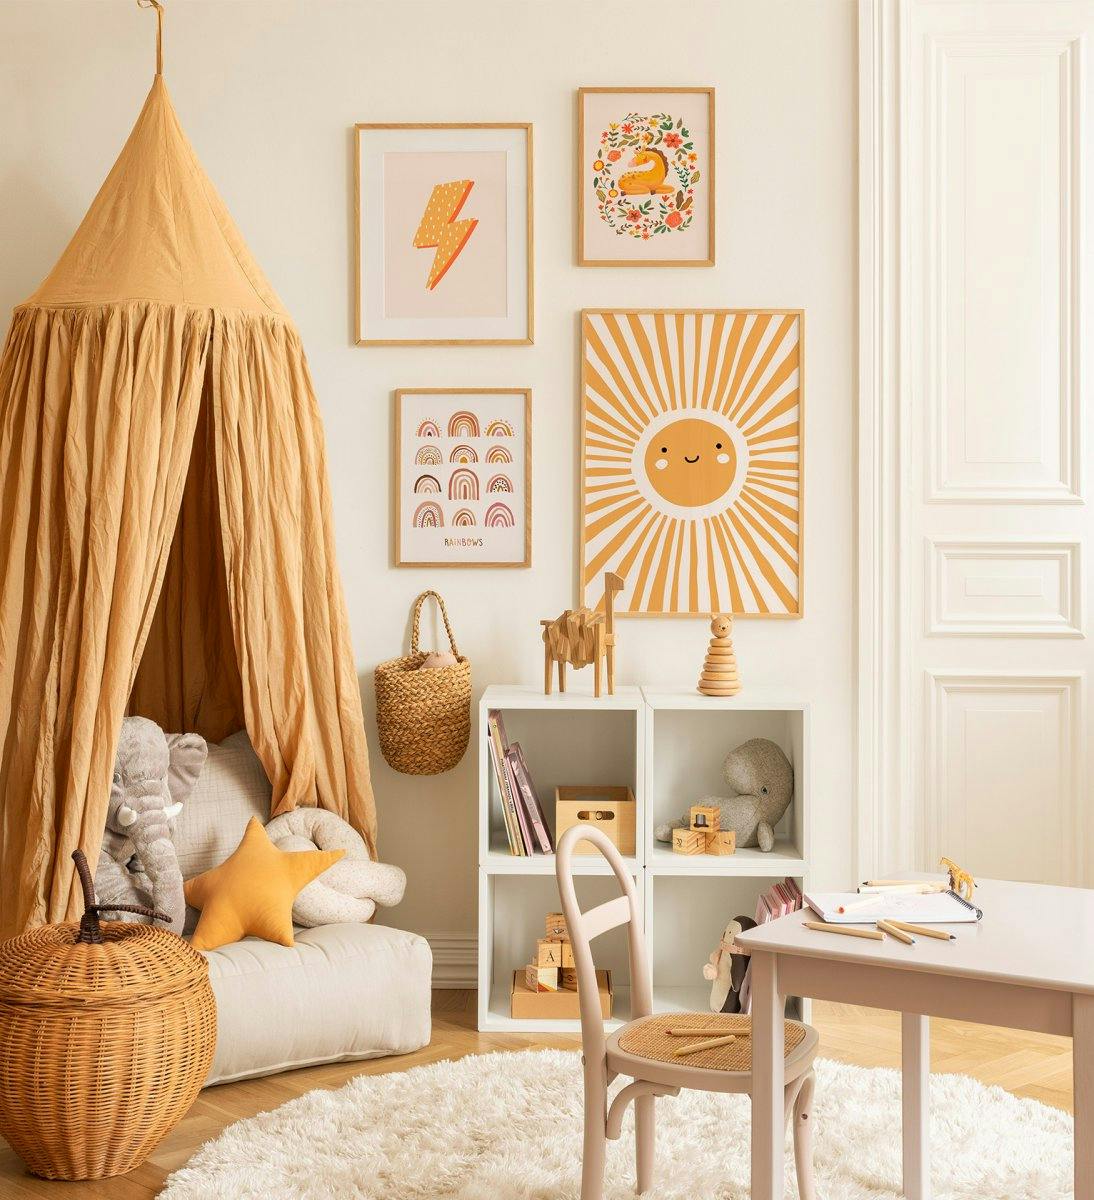 Bilderwand für das Kinderzimmer mit Tieren und Illustrationen in einem orangen Farbschema in Eichenrahmen für das Kinderzimmer.